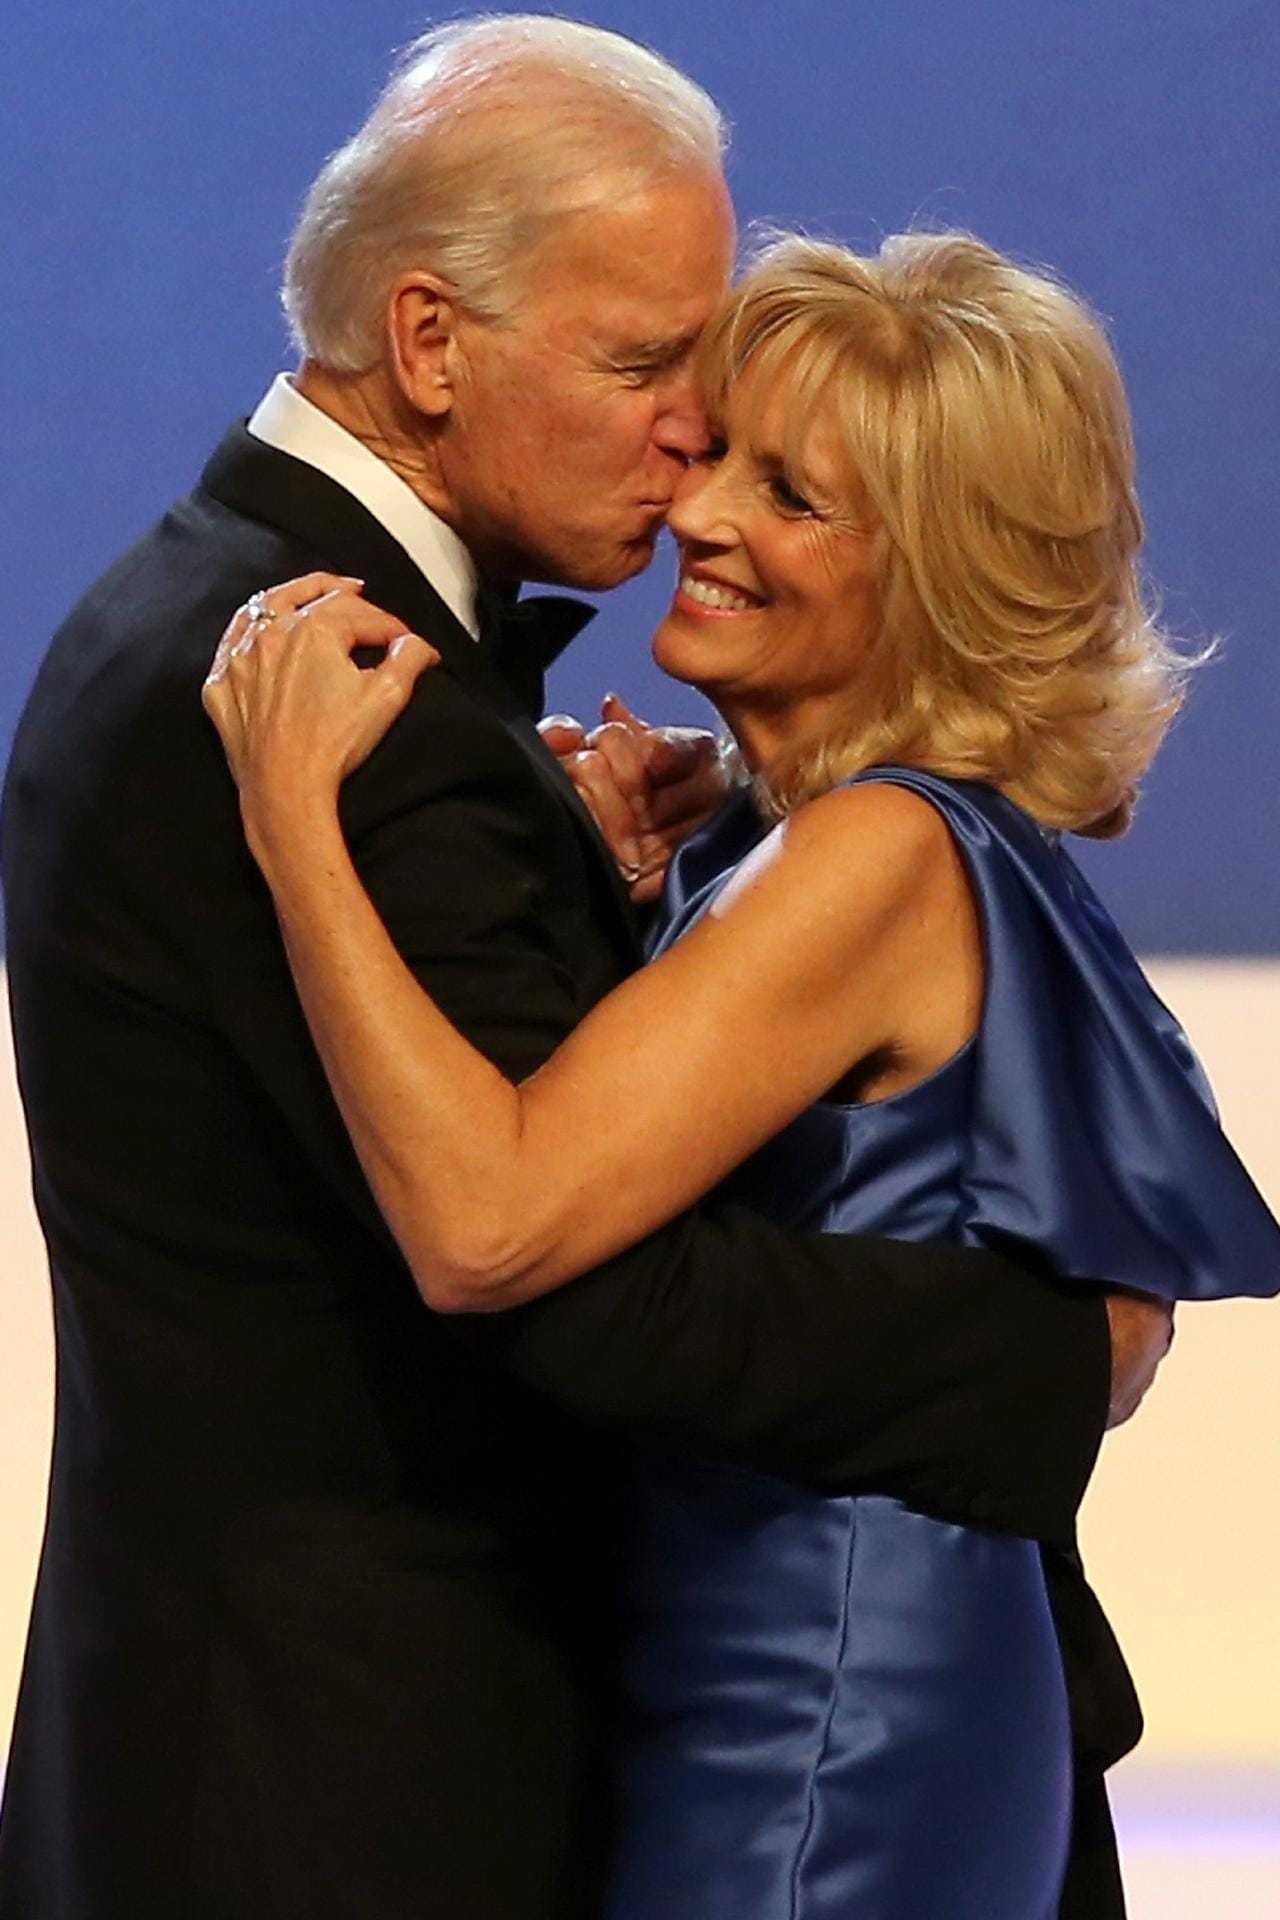 Fünf Mal hielt Joe Biden vergeblich um ihre Hand an. Erst beim sechsten Mal sagte Jill Ja.